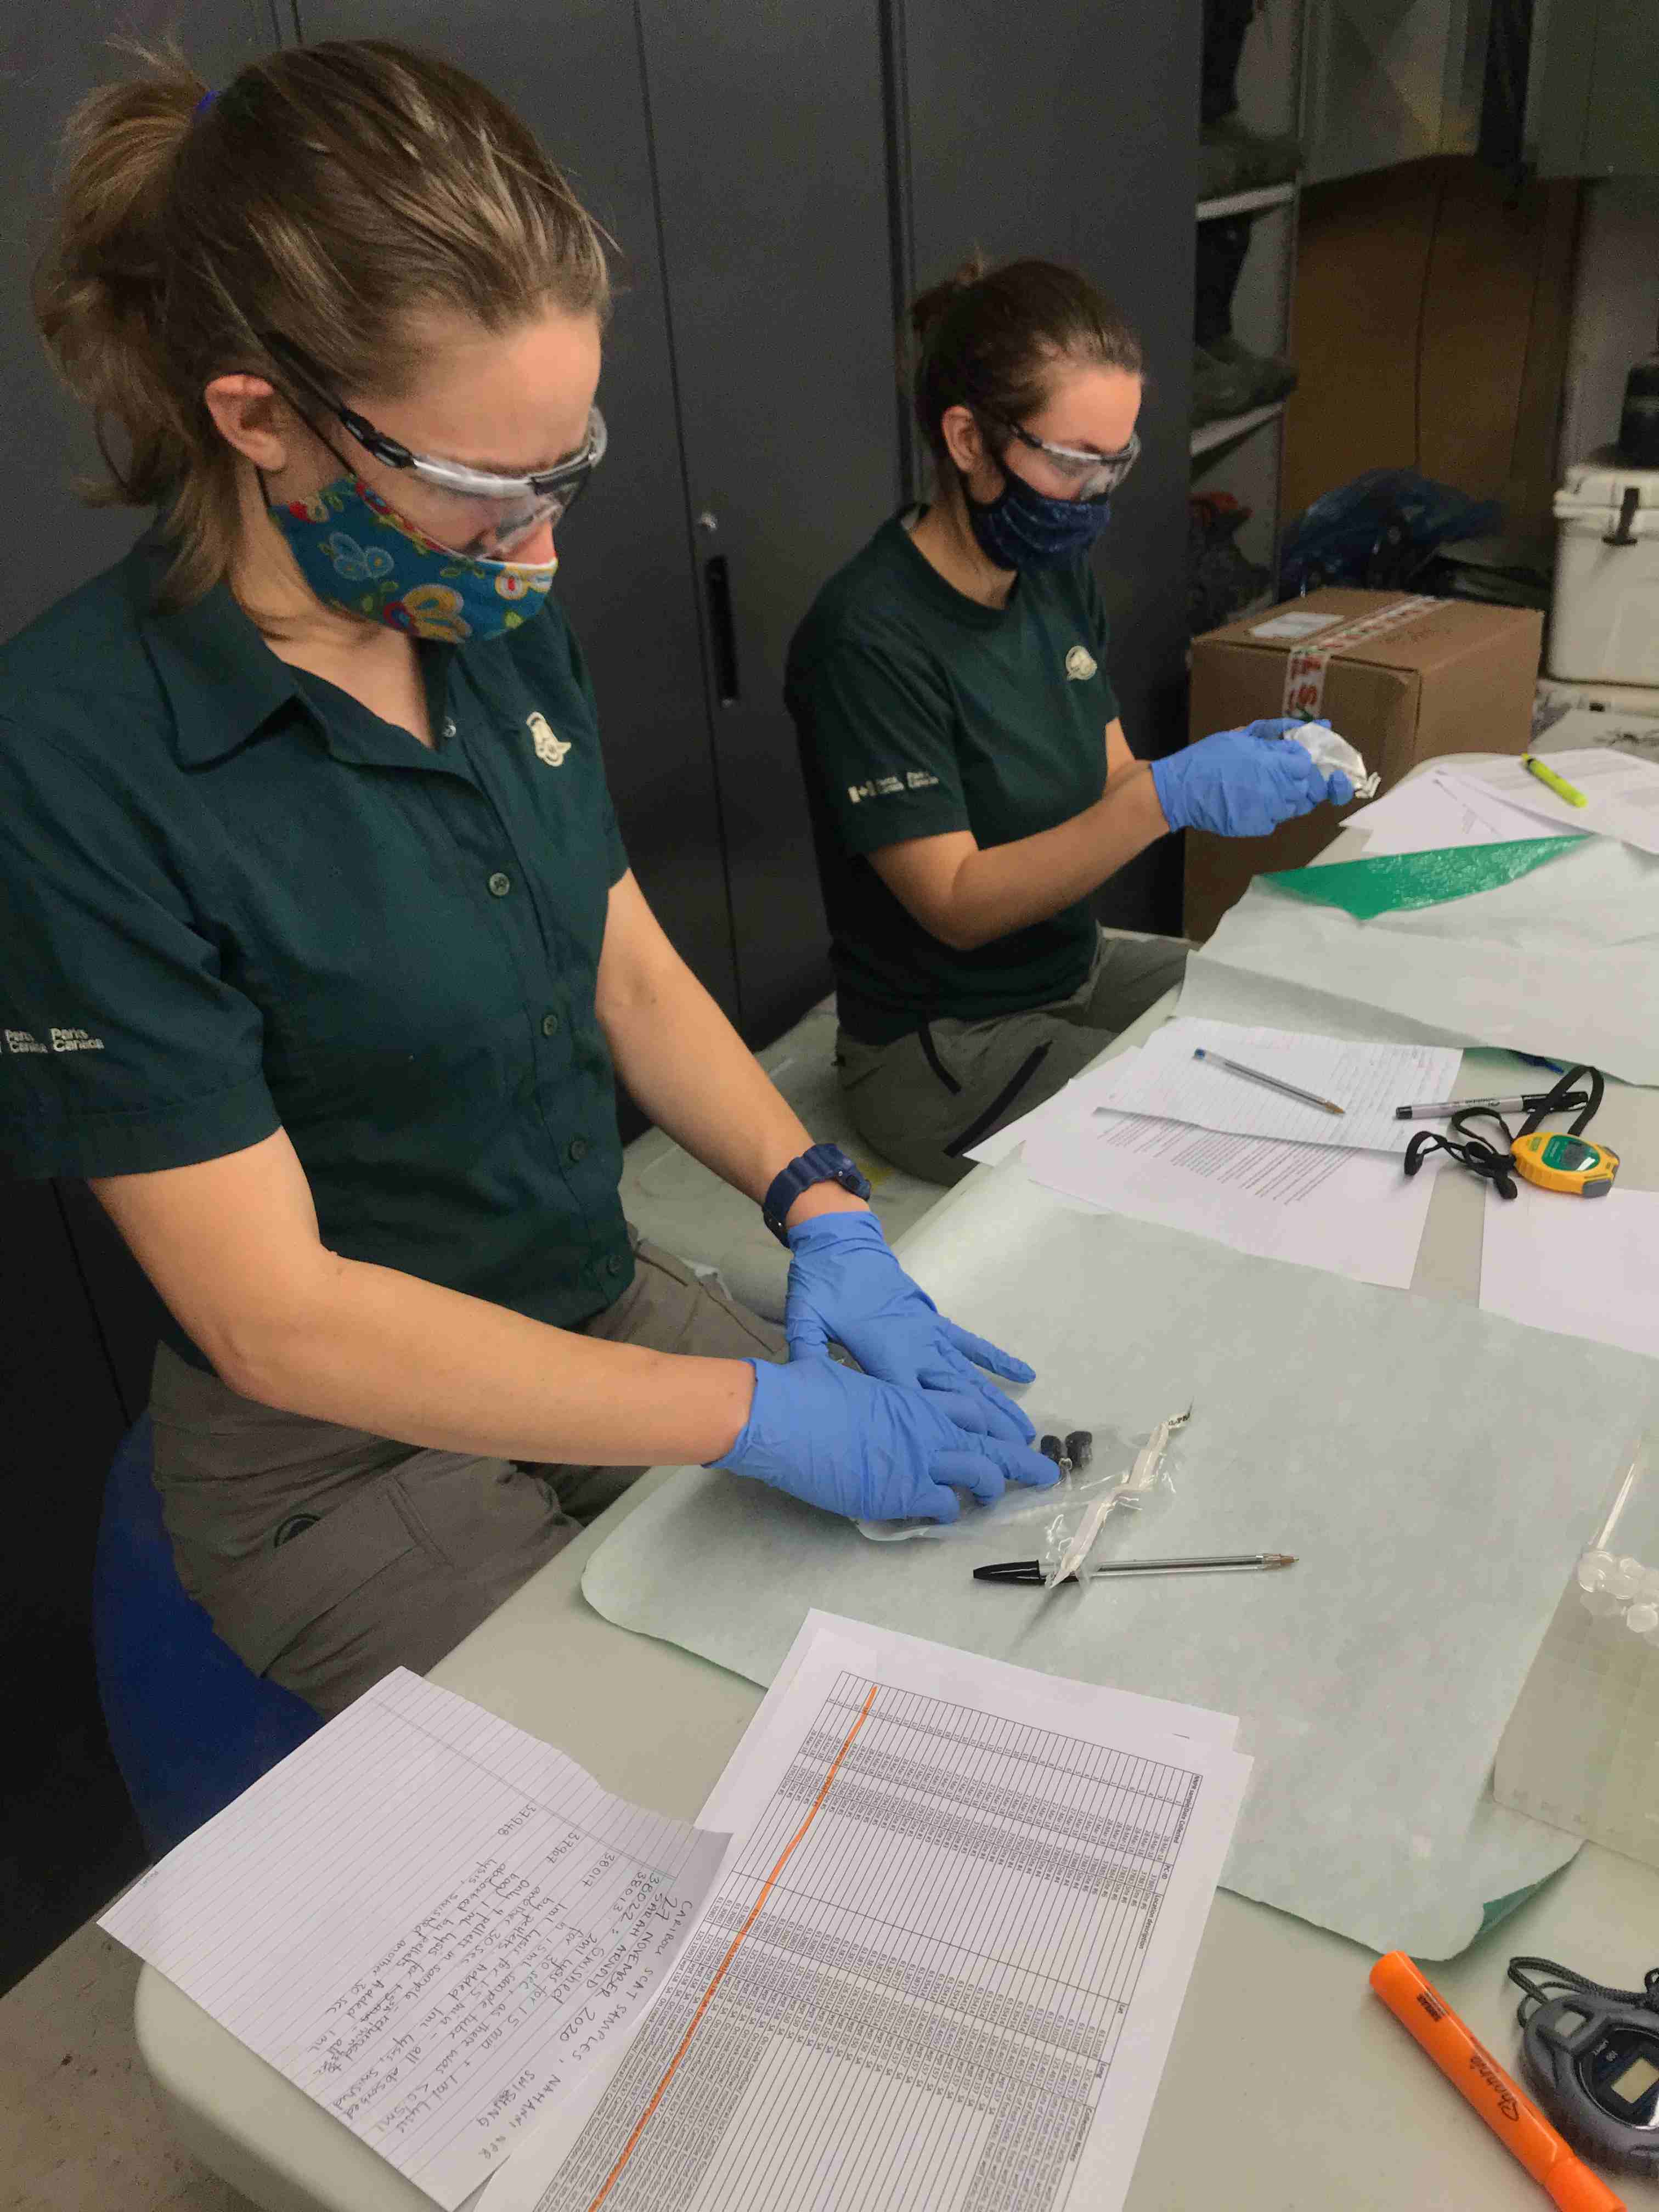 Deux employés de Parcs Canada traitent des échantillons d’excréments sur une table avec des papiers, des stylos et des appareils de mesure.